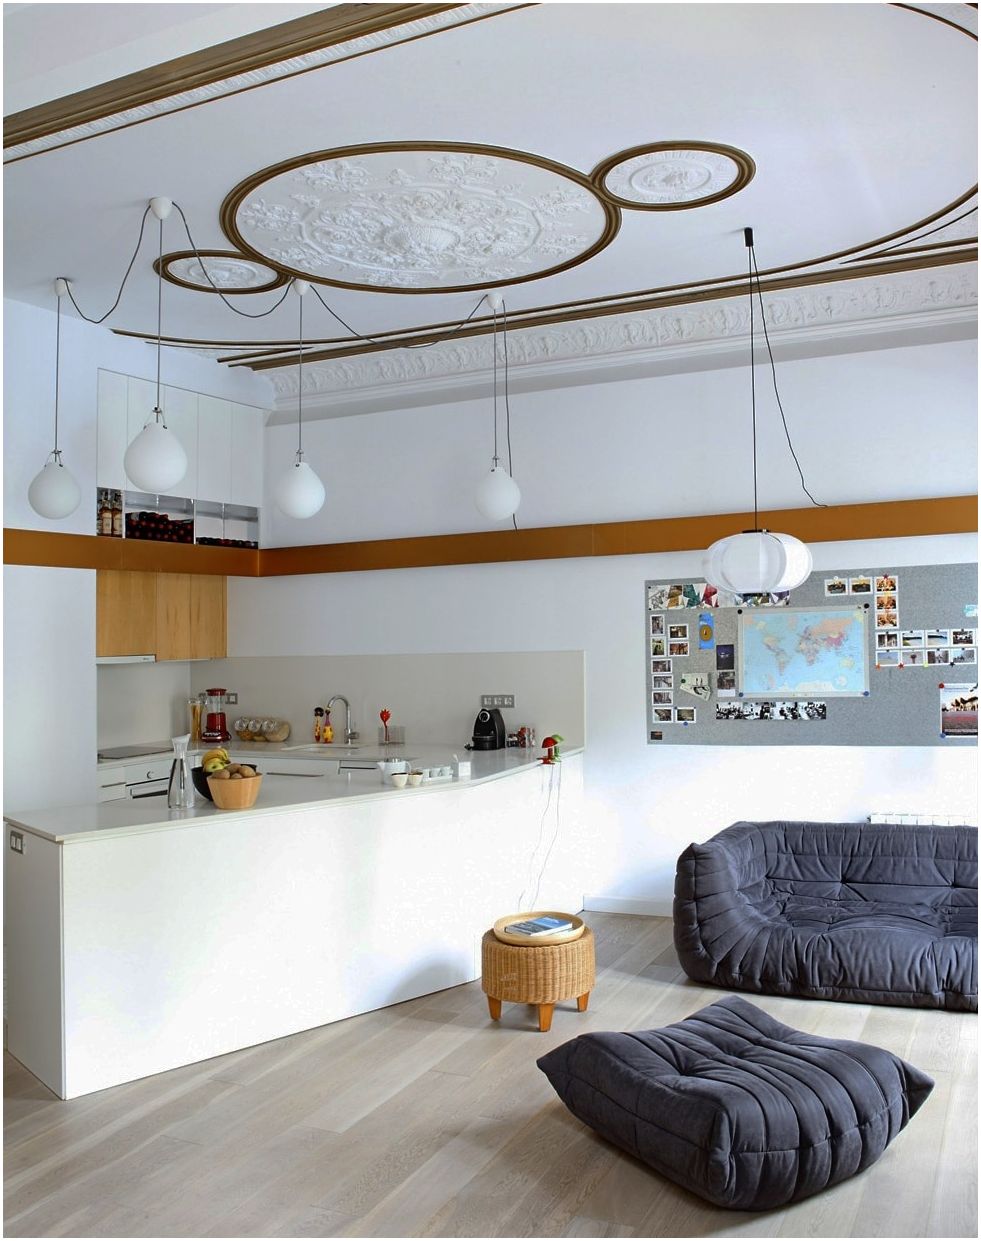 100 فكرة مريحة لمساحة كبيرة: غرفة معيشة مطبخ 25 متر مربع. م